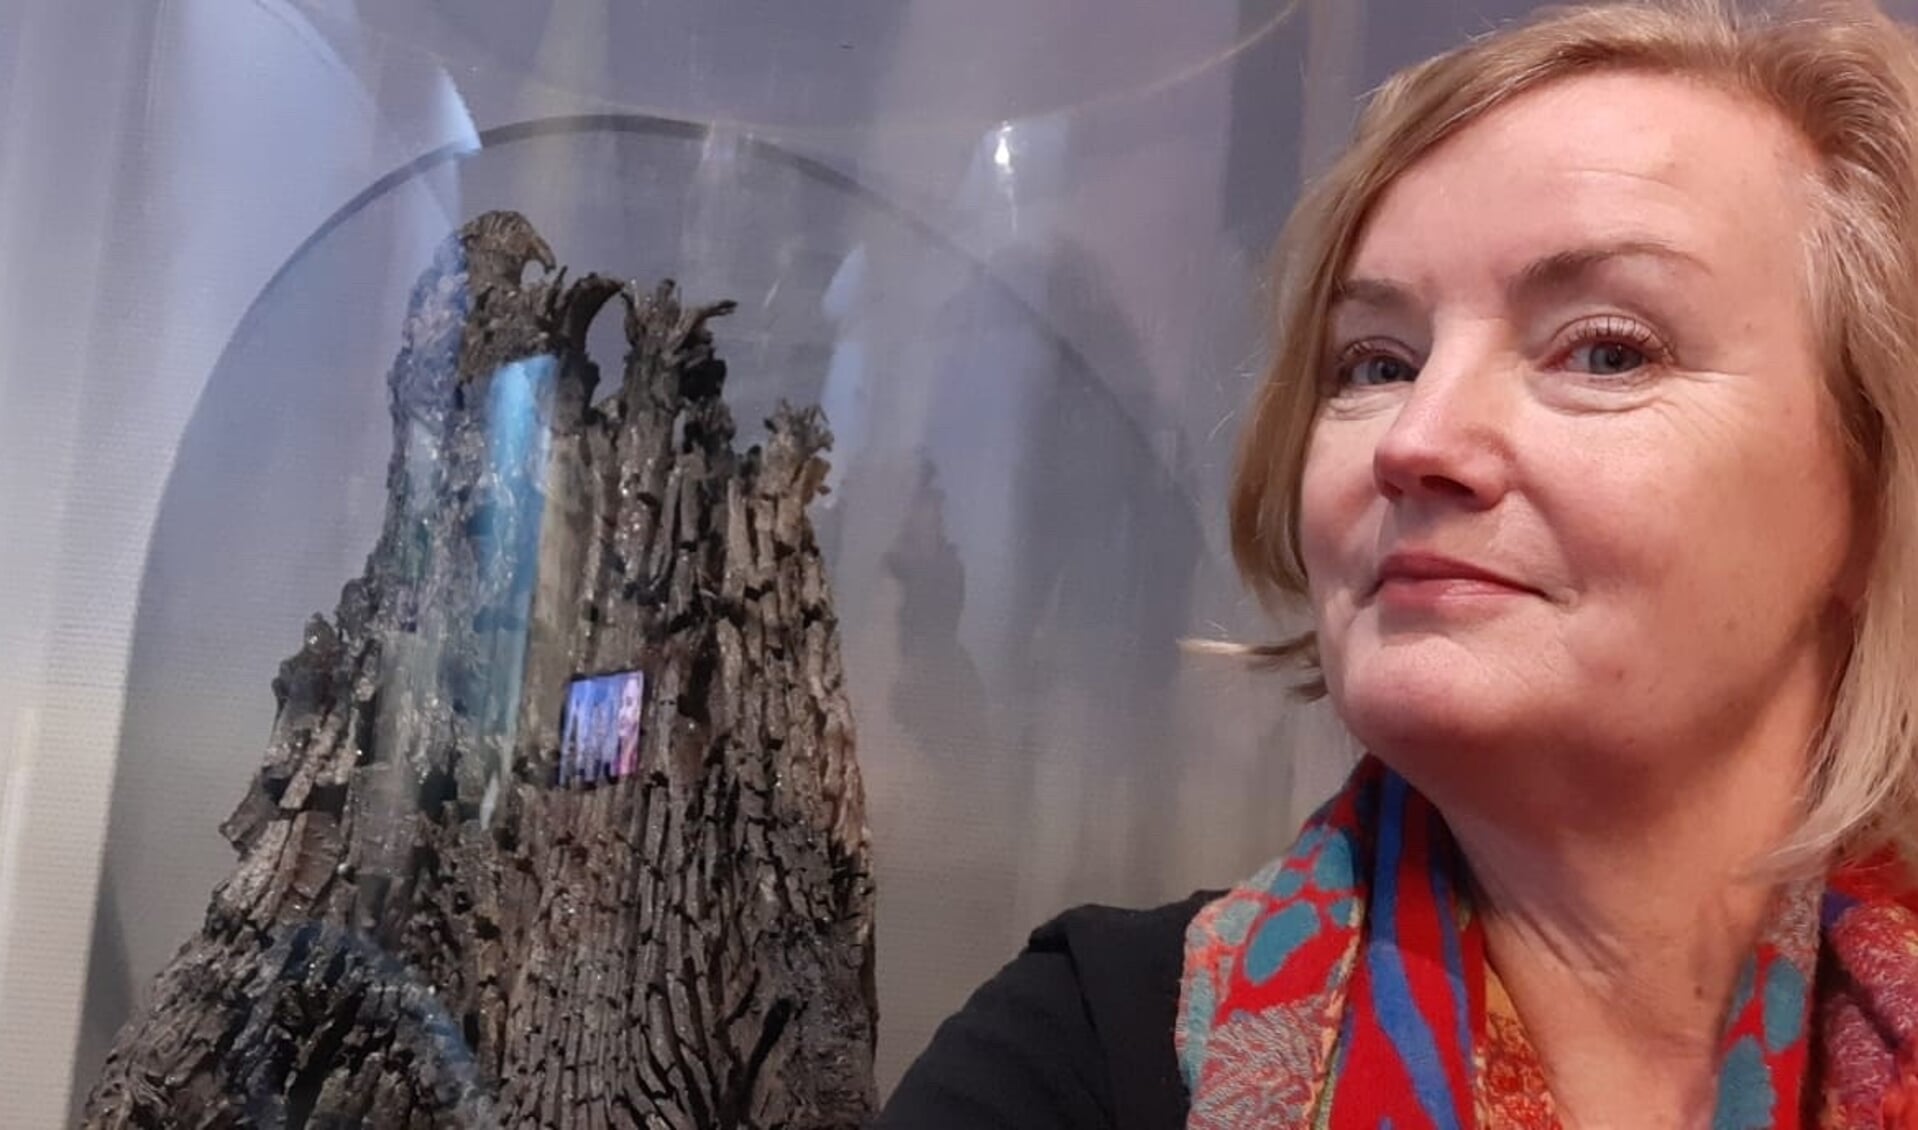 Directeur van het museum, Elise van Melis, bij een fossiele boomstronk die gekozen kan worden als topstuk. 